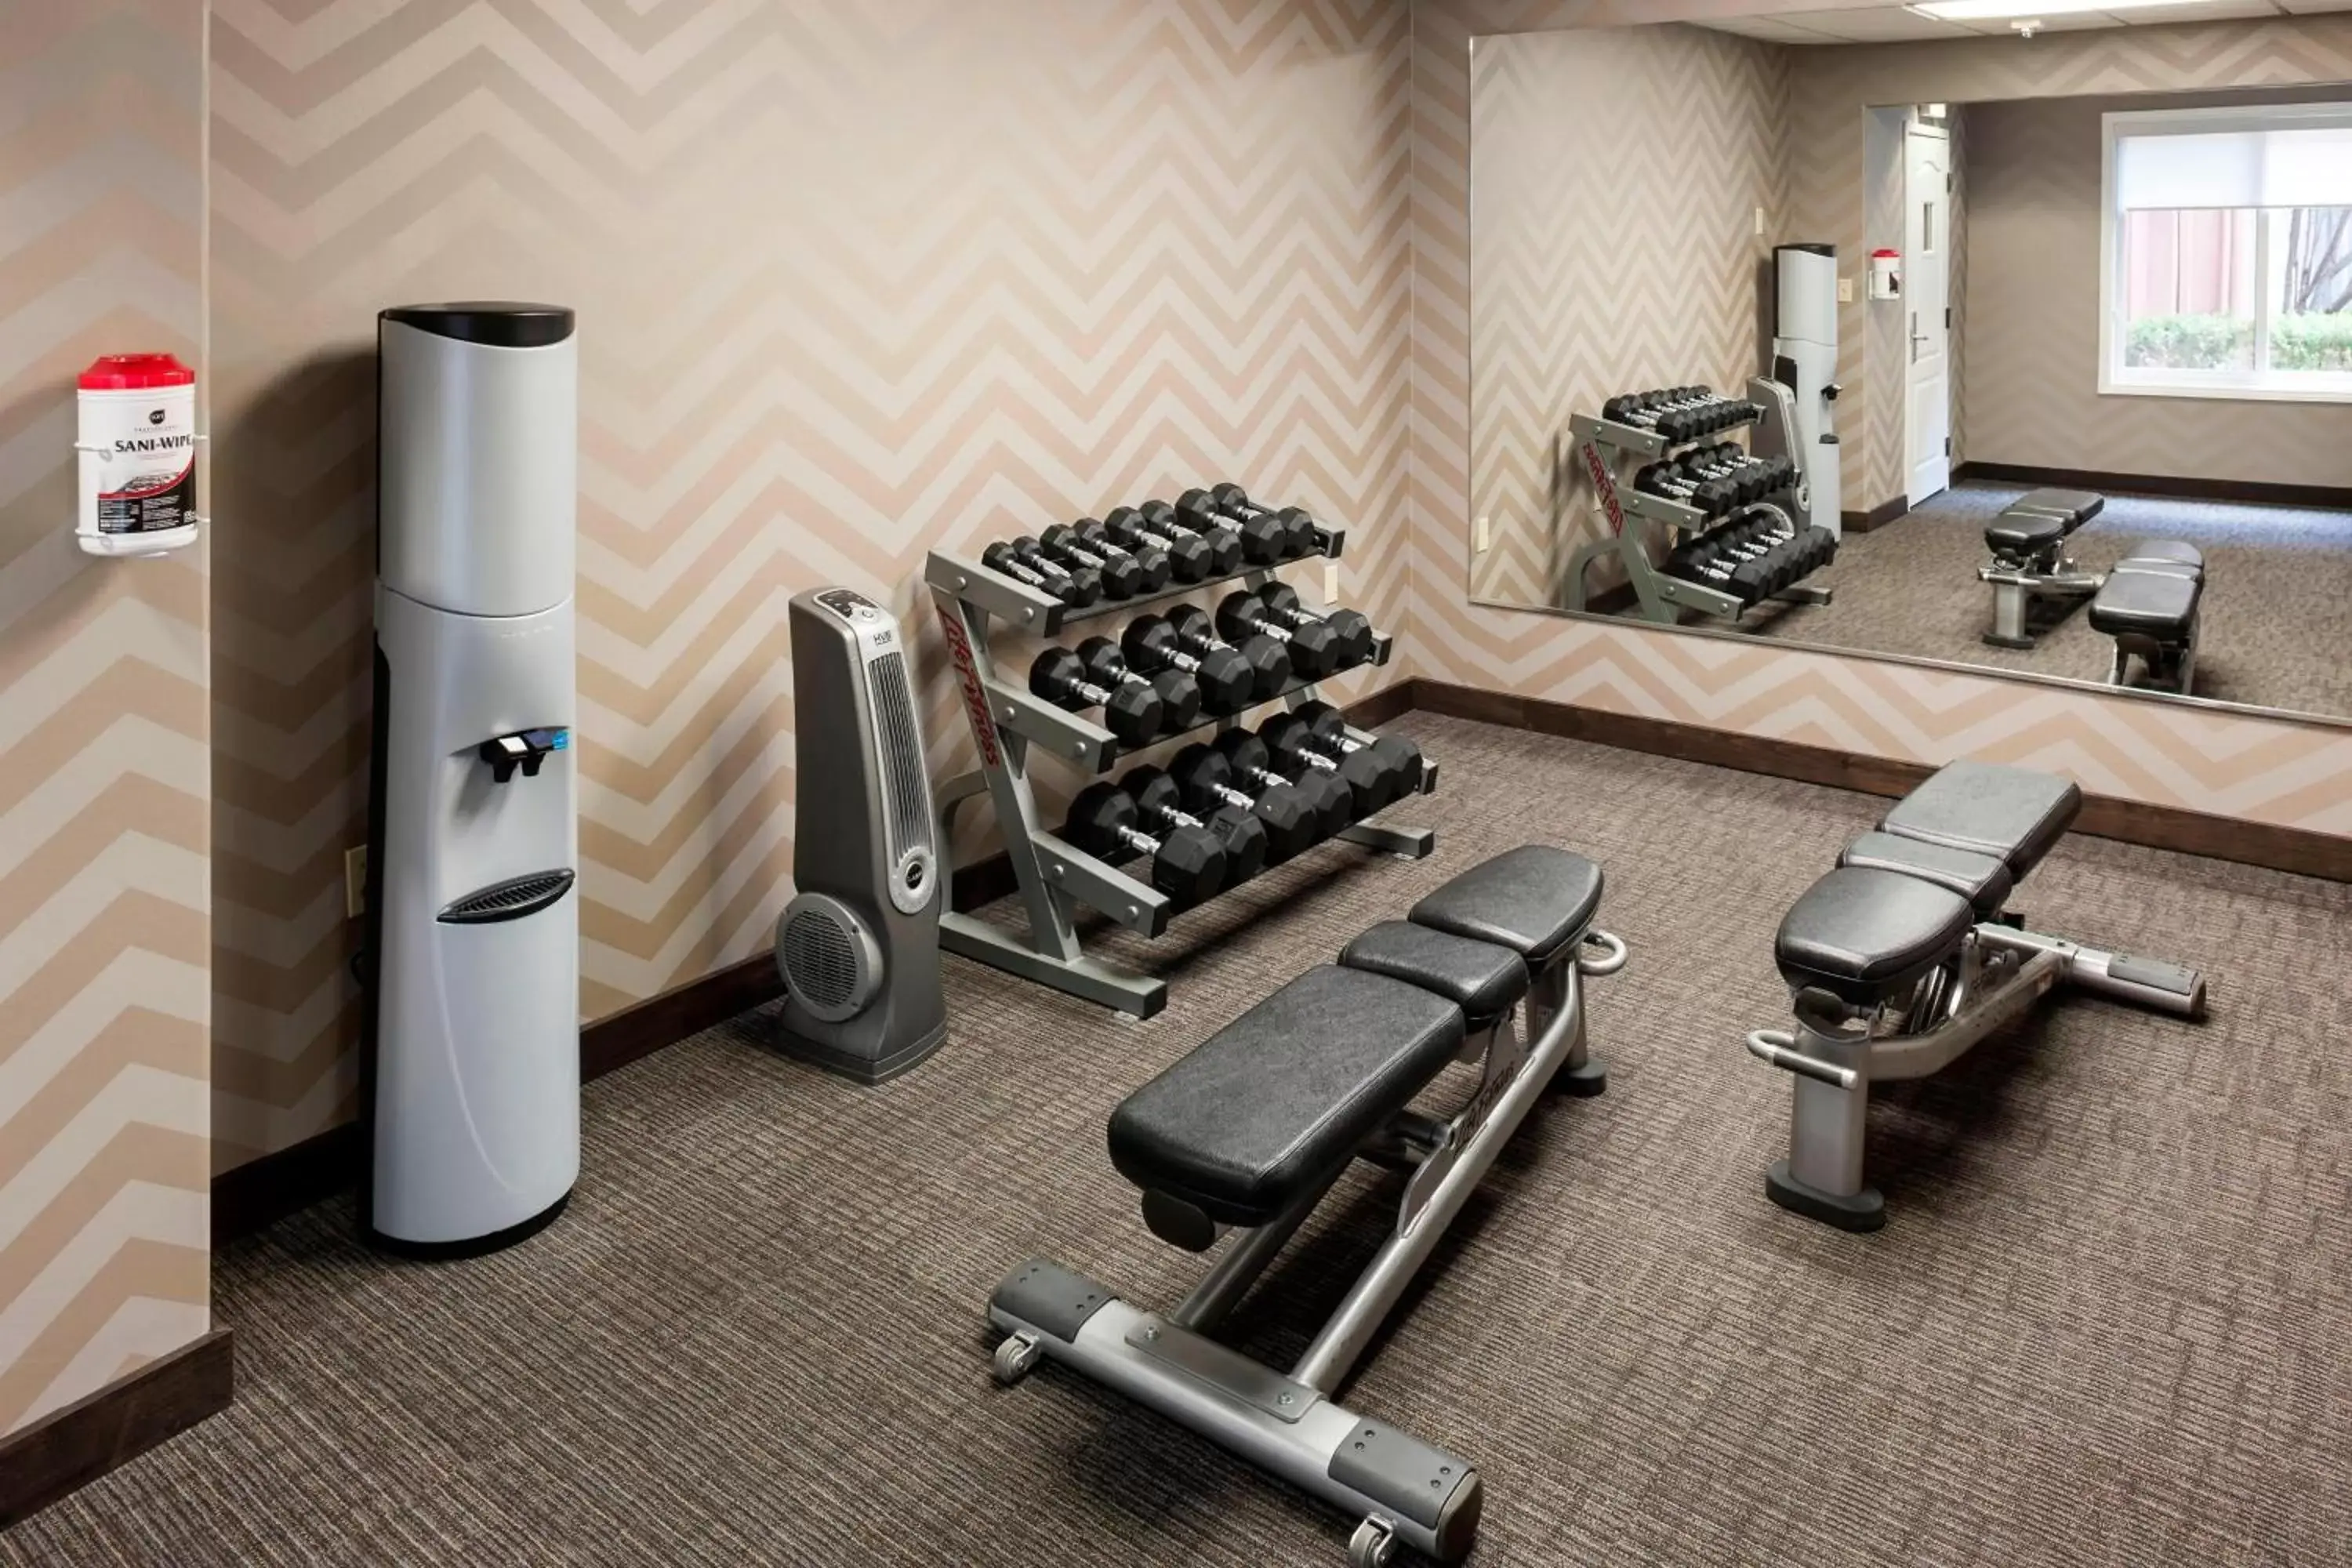 Fitness centre/facilities, Fitness Center/Facilities in Fairfield Inn by Marriott Santa Clarita Valencia